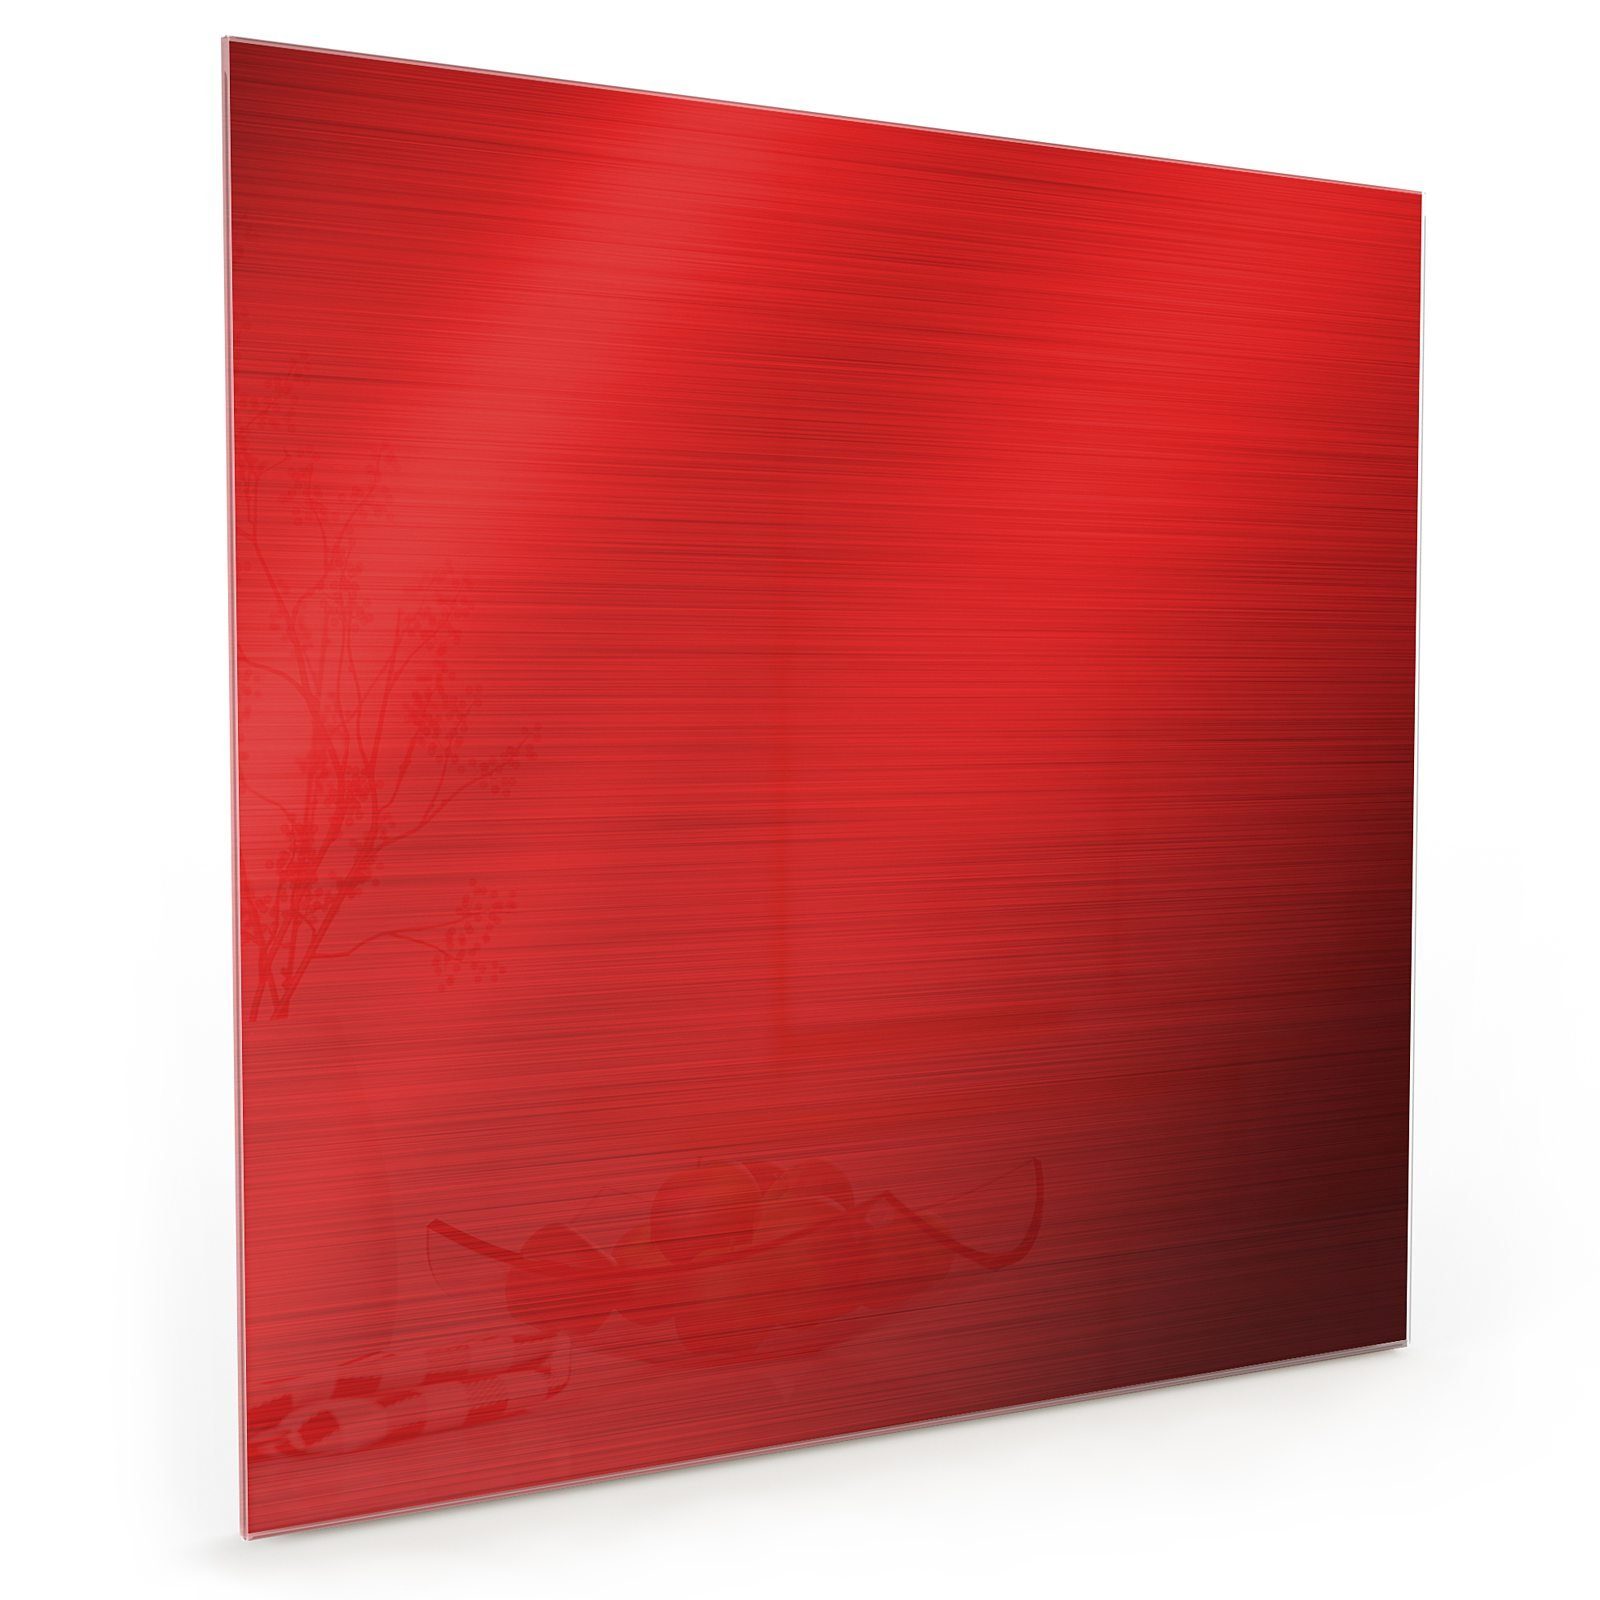 Motiv Küchenrückwand mit Primedeco Küchenrückwand Rotes Spritzschutz Metall Glas